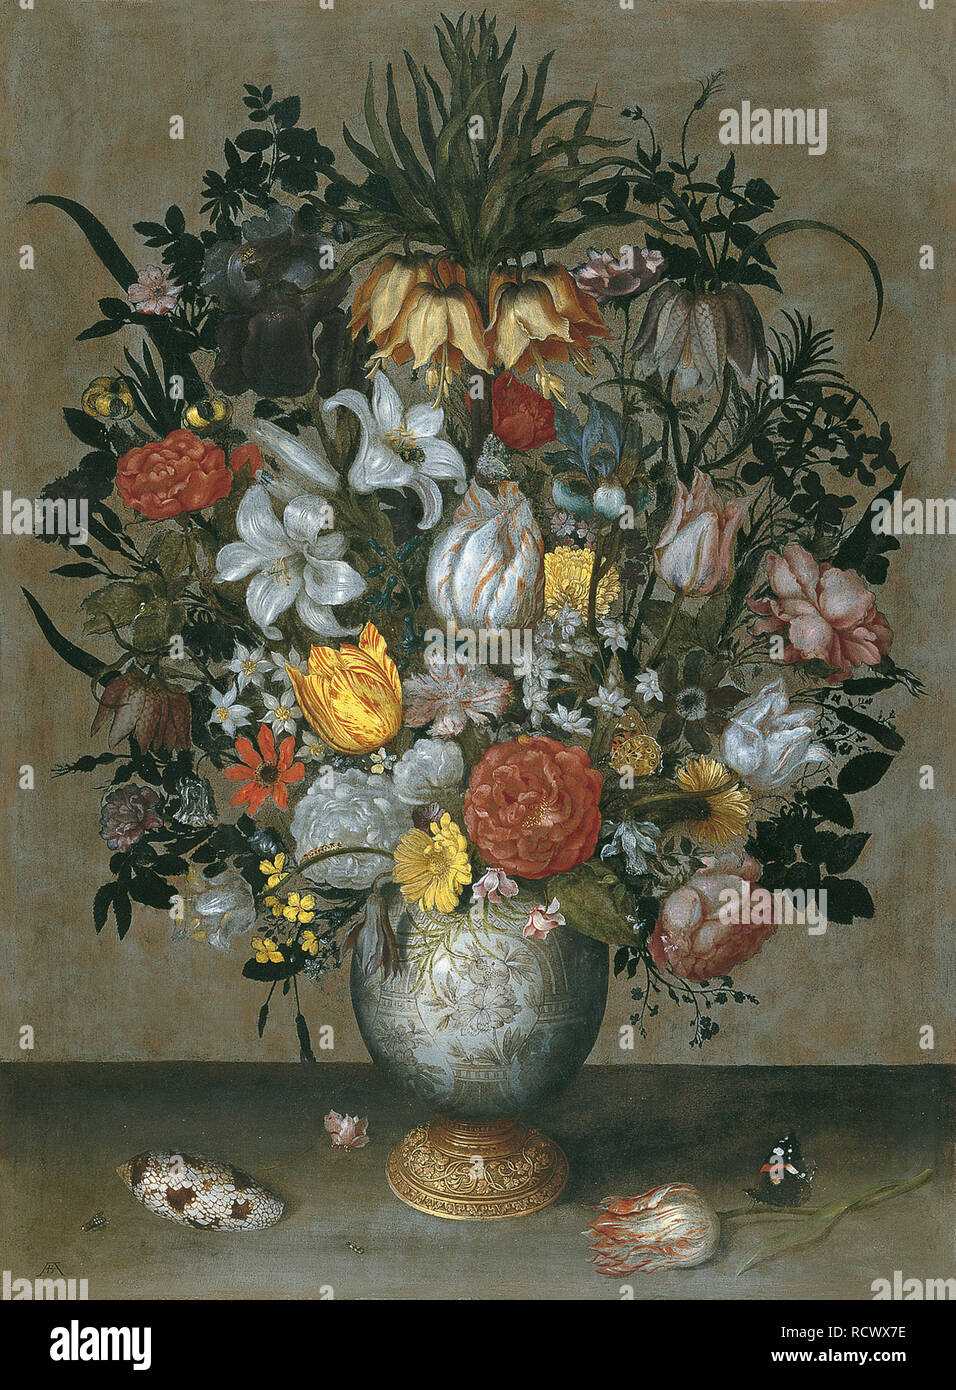 Chinesische Vase mit Blumen, Muscheln und Insekten. Museum: Museo Thyssen-Bornemisza Sammlungen. Autor: Bosschaert, Ambrosius, der Ältere. Stockfoto